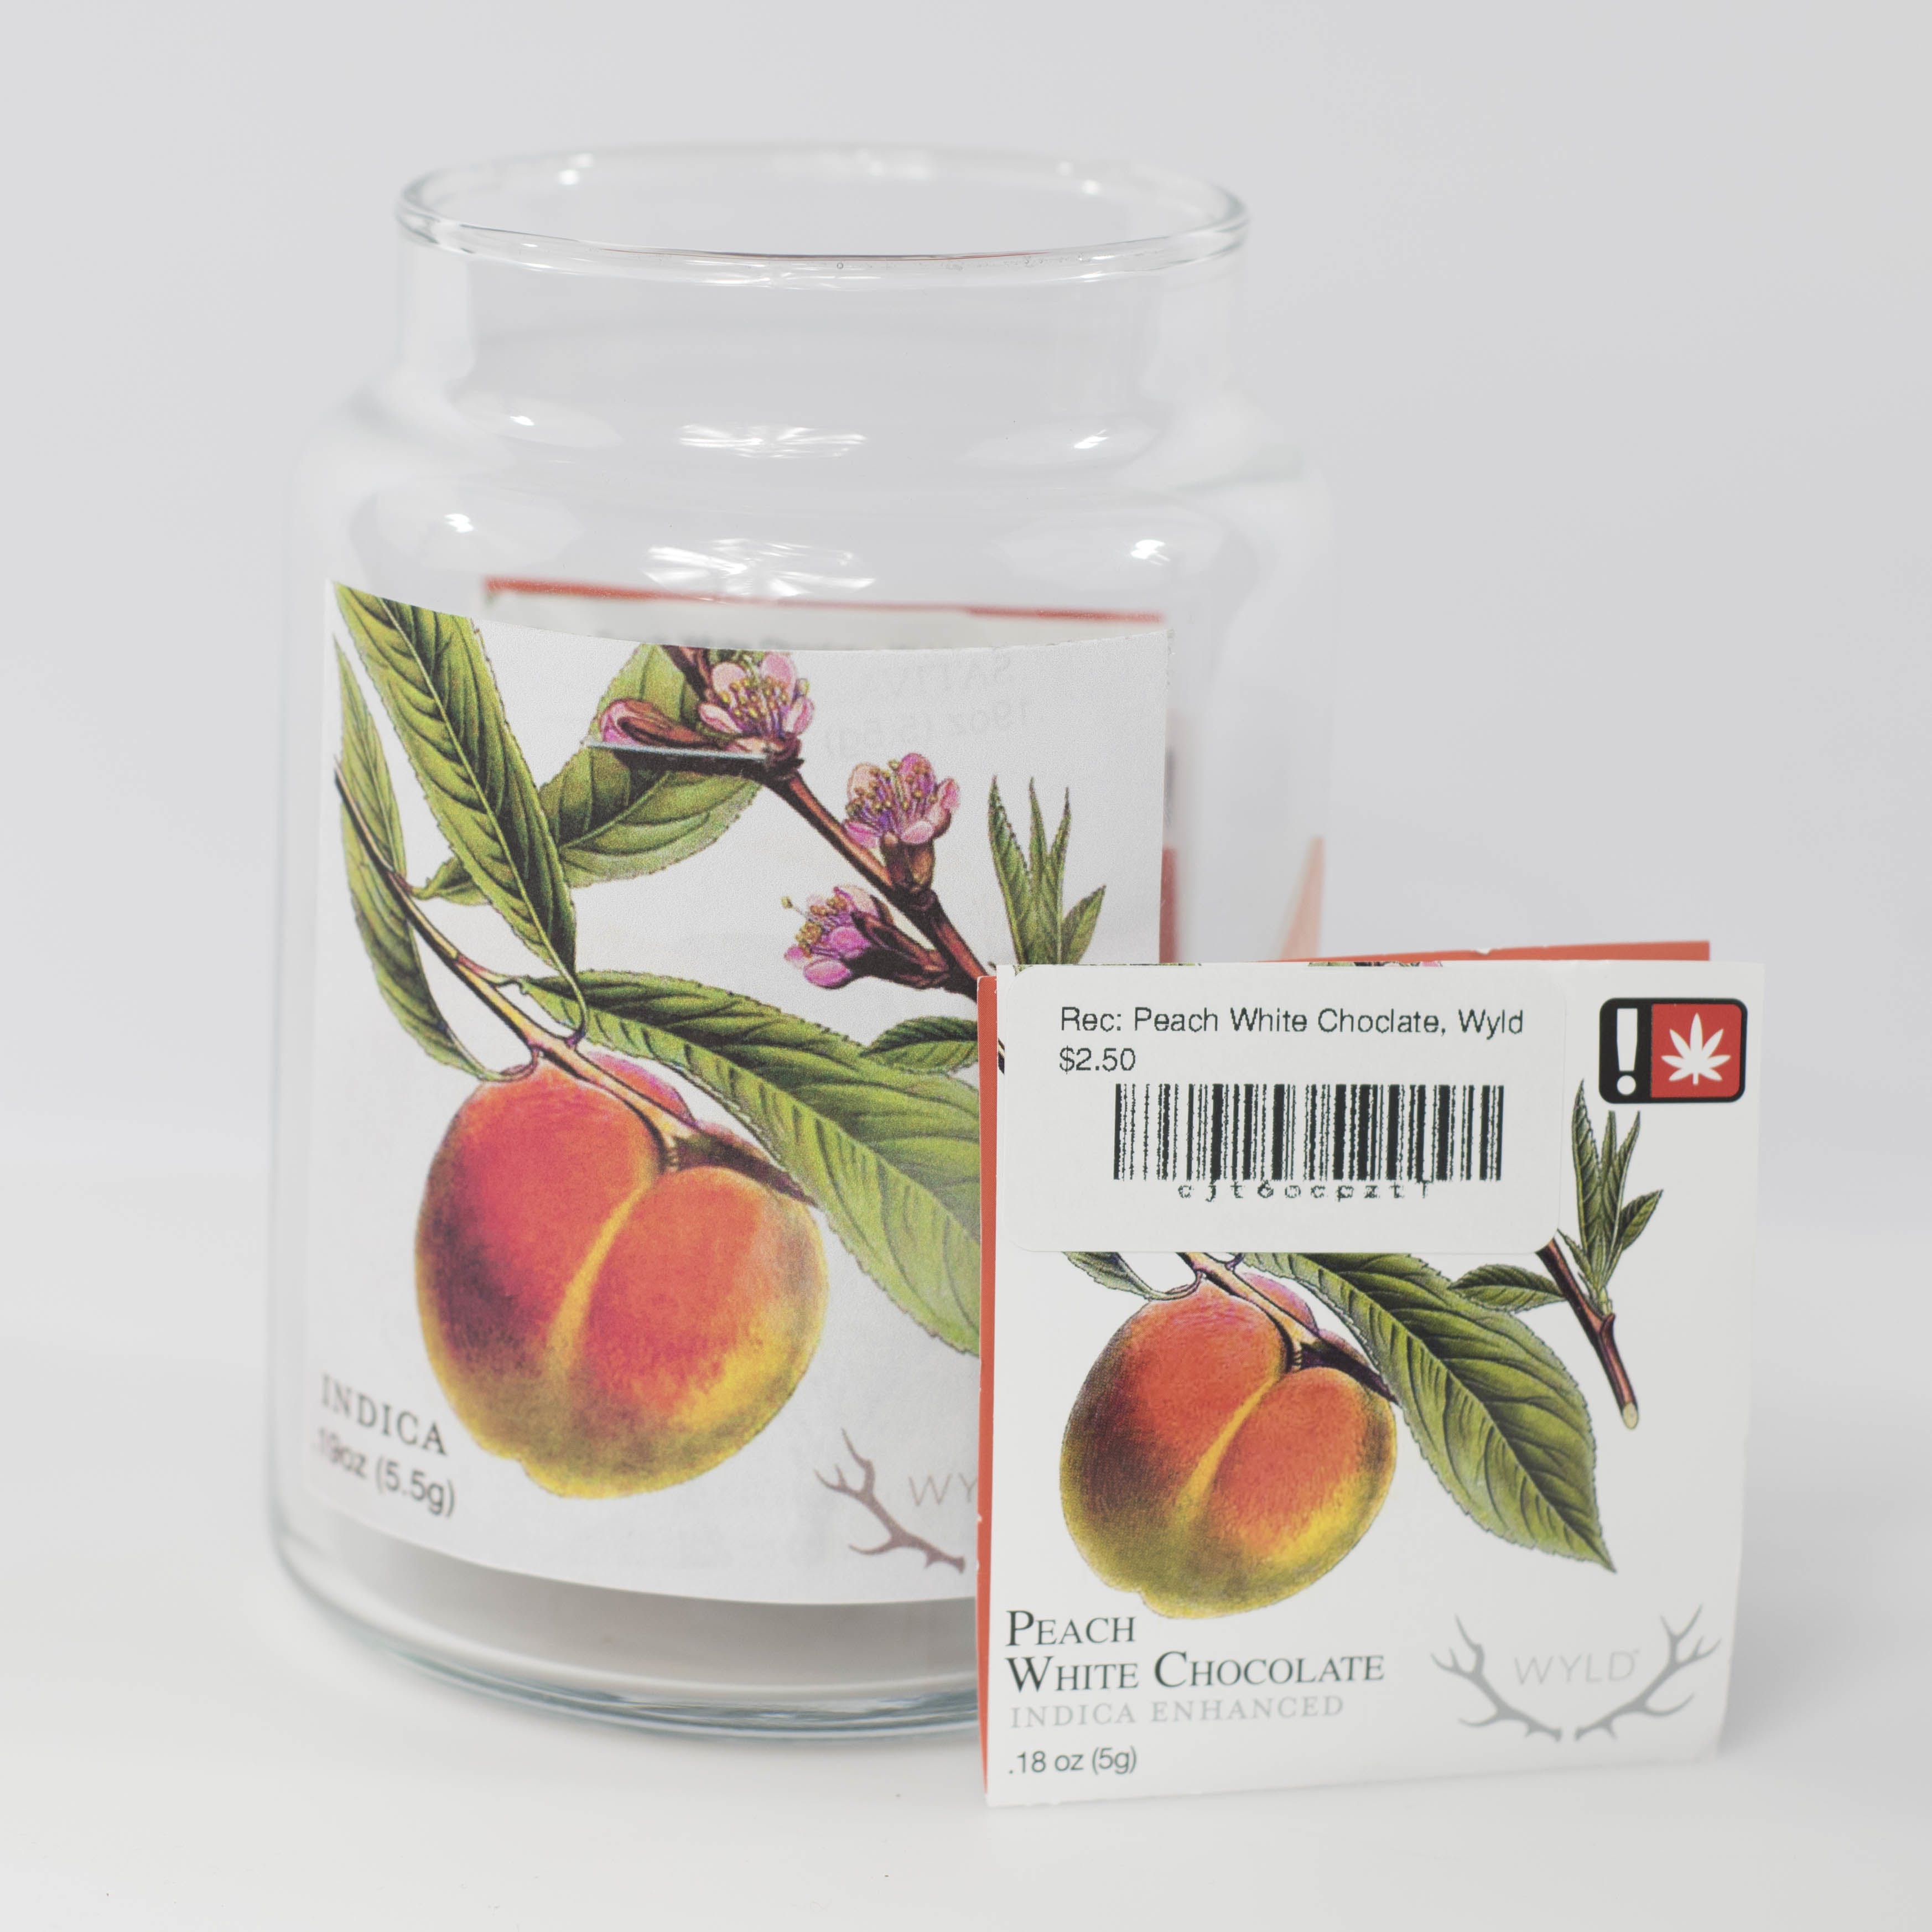 edible-peach-white-choclate-single